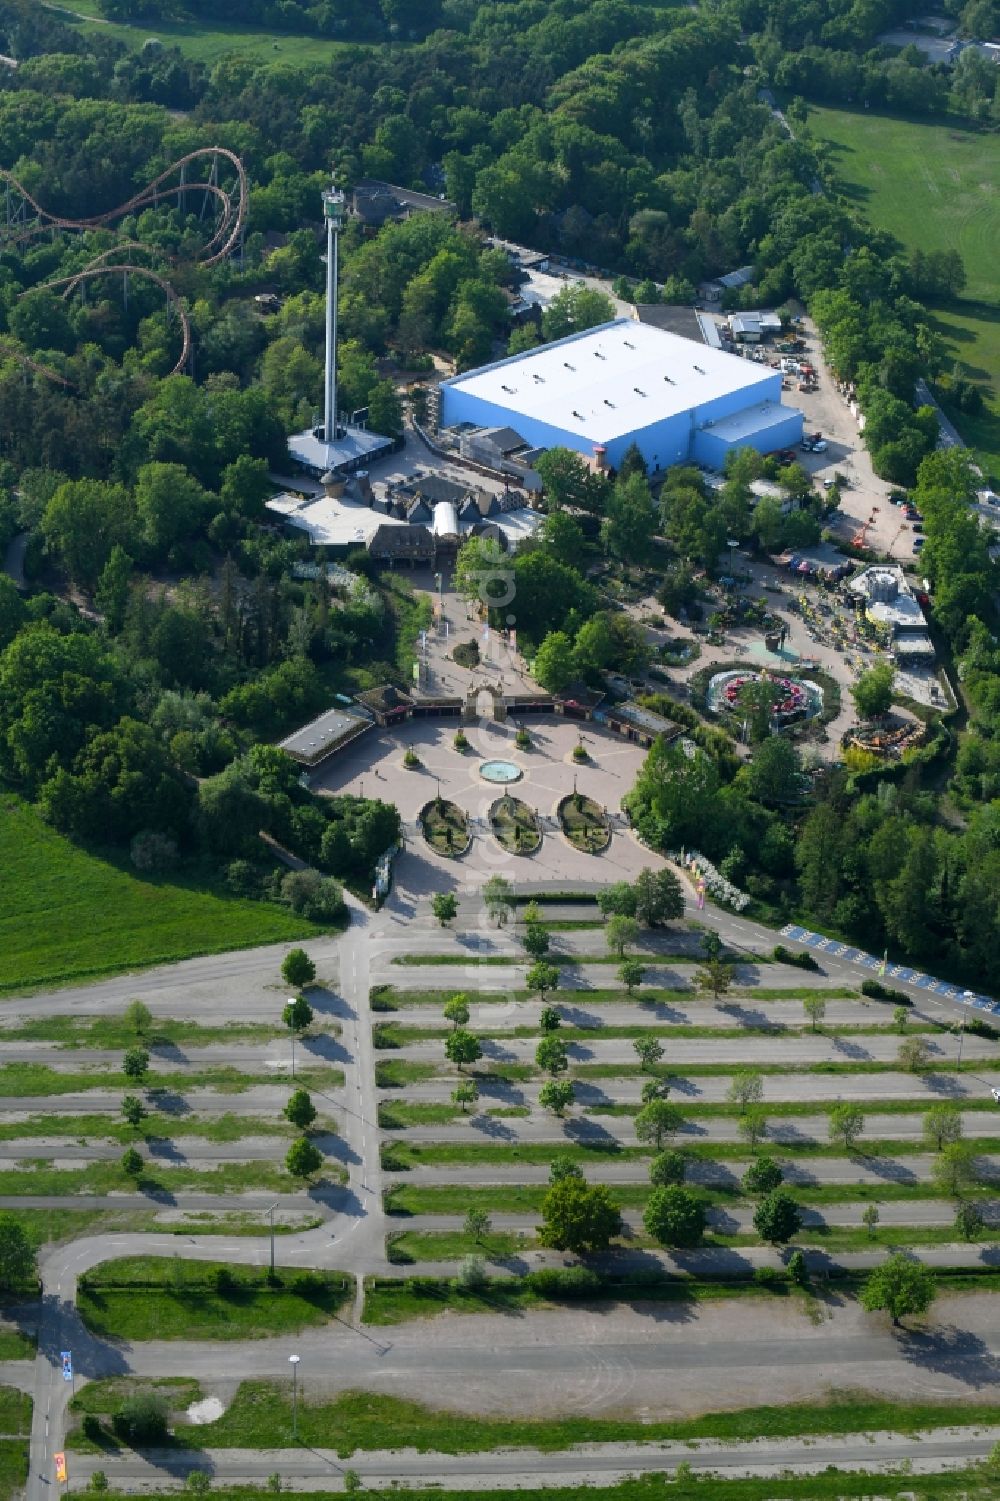 Luftbild Haßloch - Freizeitzentrum Holiday Park in Haßloch im Bundesland Rheinland-Pfalz, Deutschland